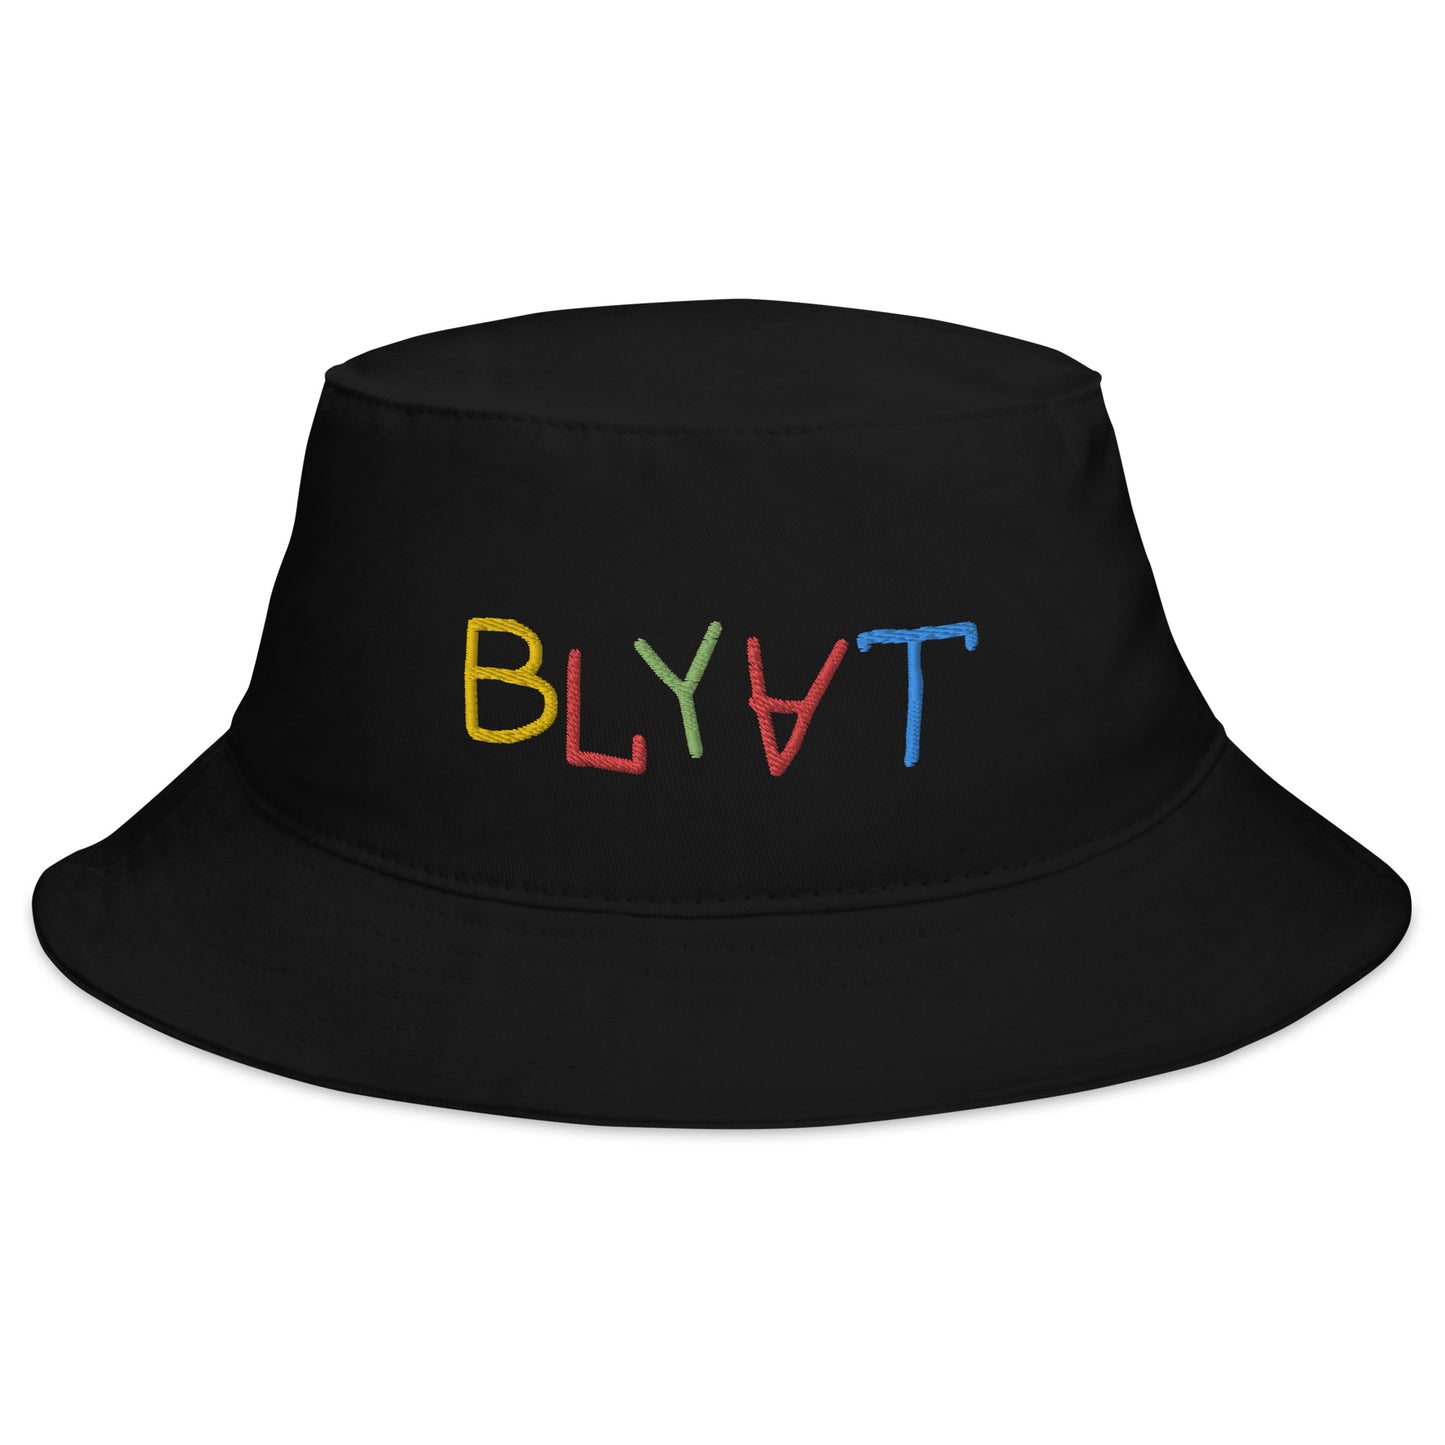 Blyat Hat